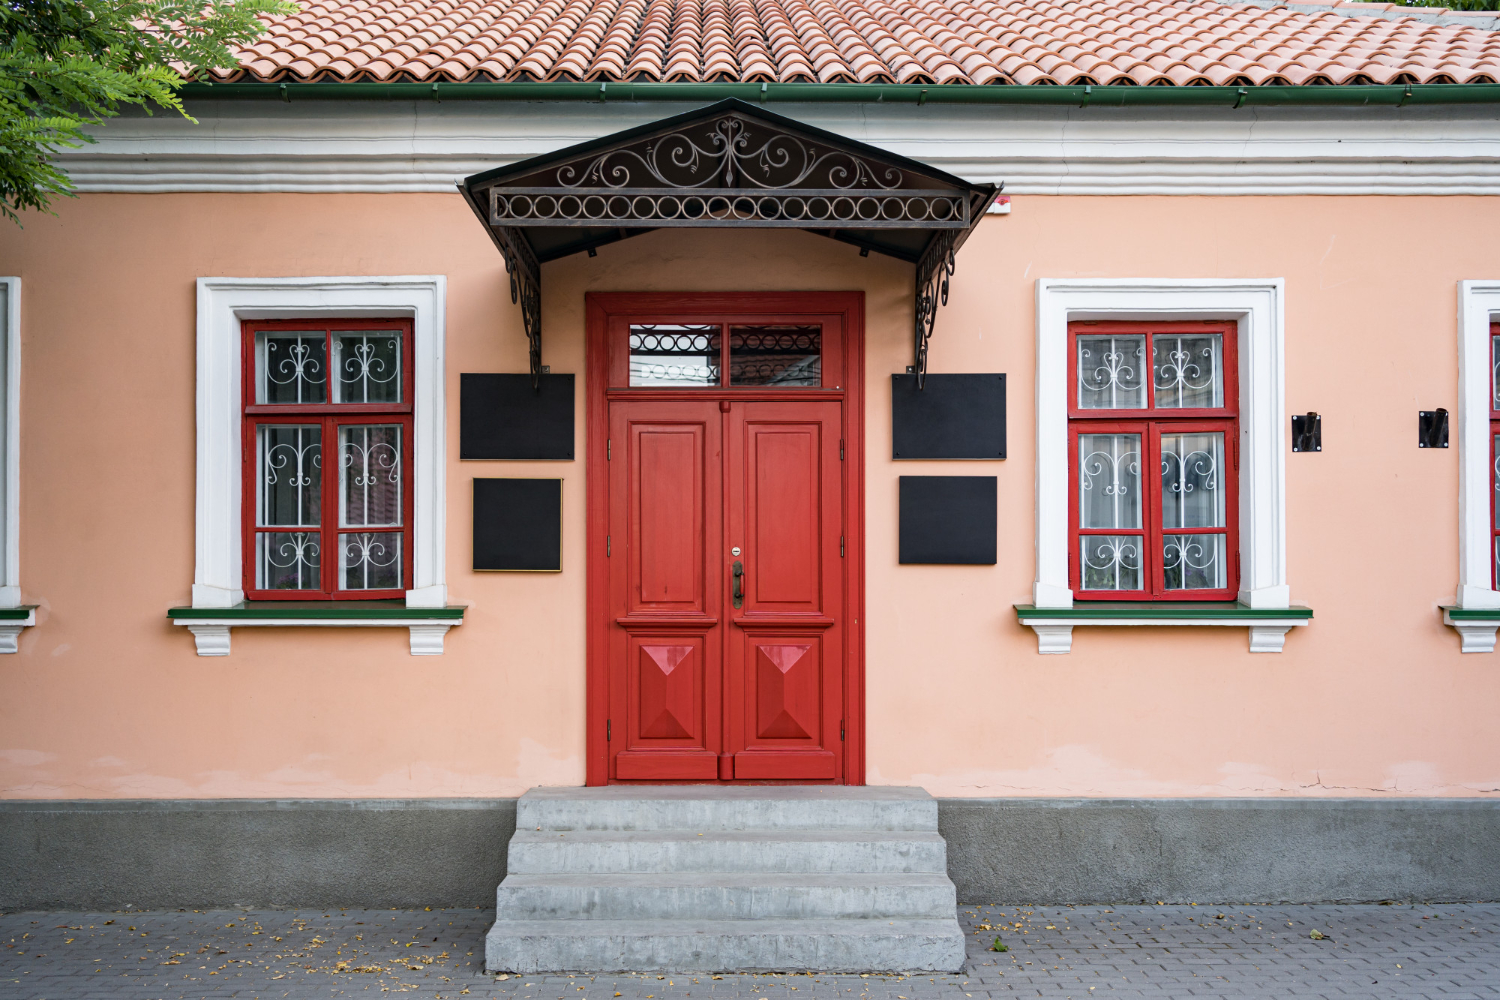 Fachada de una casa histórica con paredes en color melocotón 2024, puerta de entrada roja y ventanas con detalles en hierro forjado, destacando la combinación armoniosa de colores y arquitectura tradicional